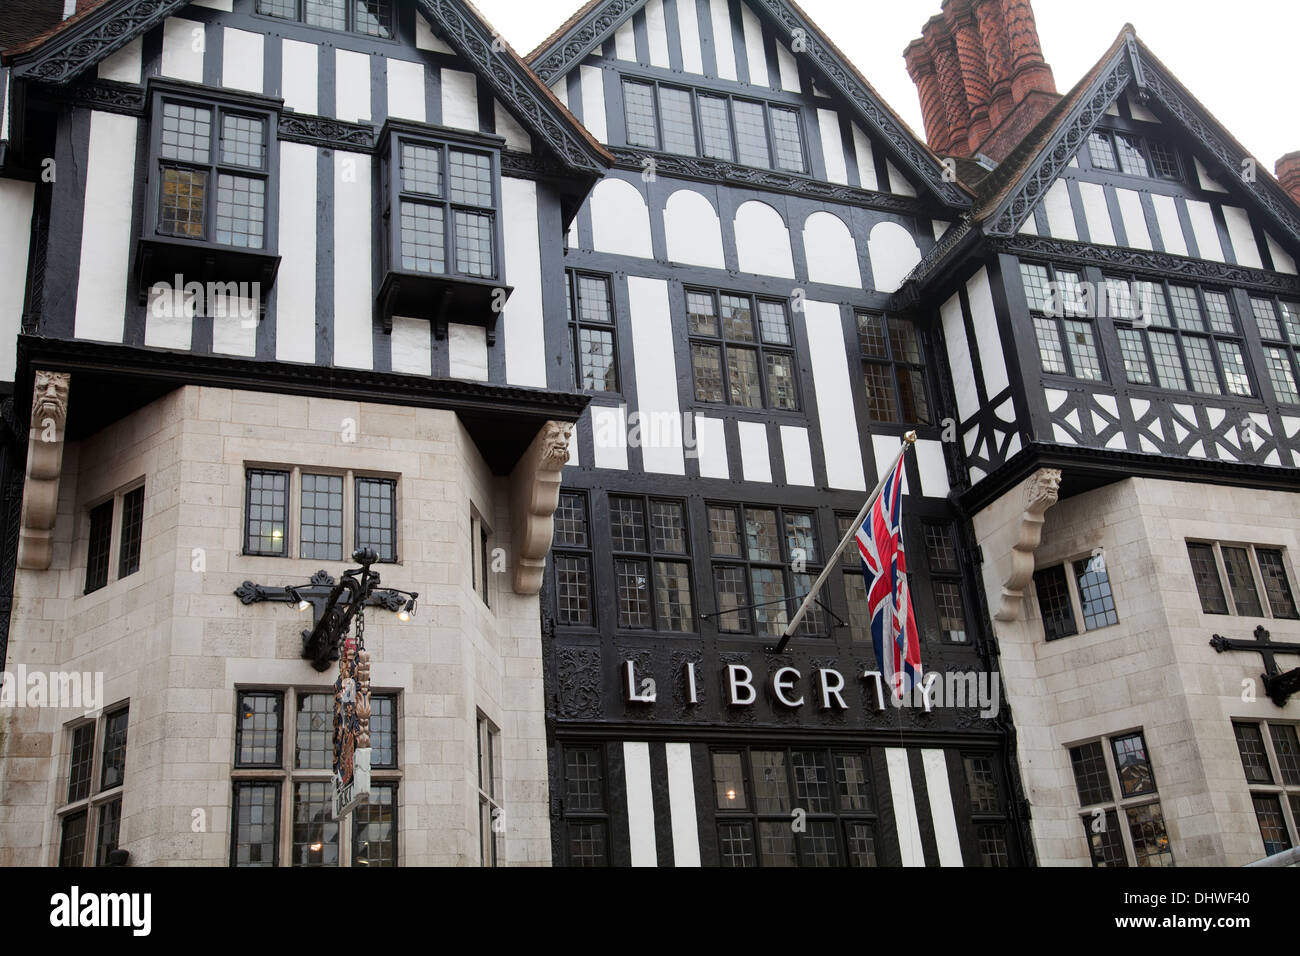 La liberté de l'architecture néo-Tudor - Magasin à Londres - Royaume-Uni Banque D'Images